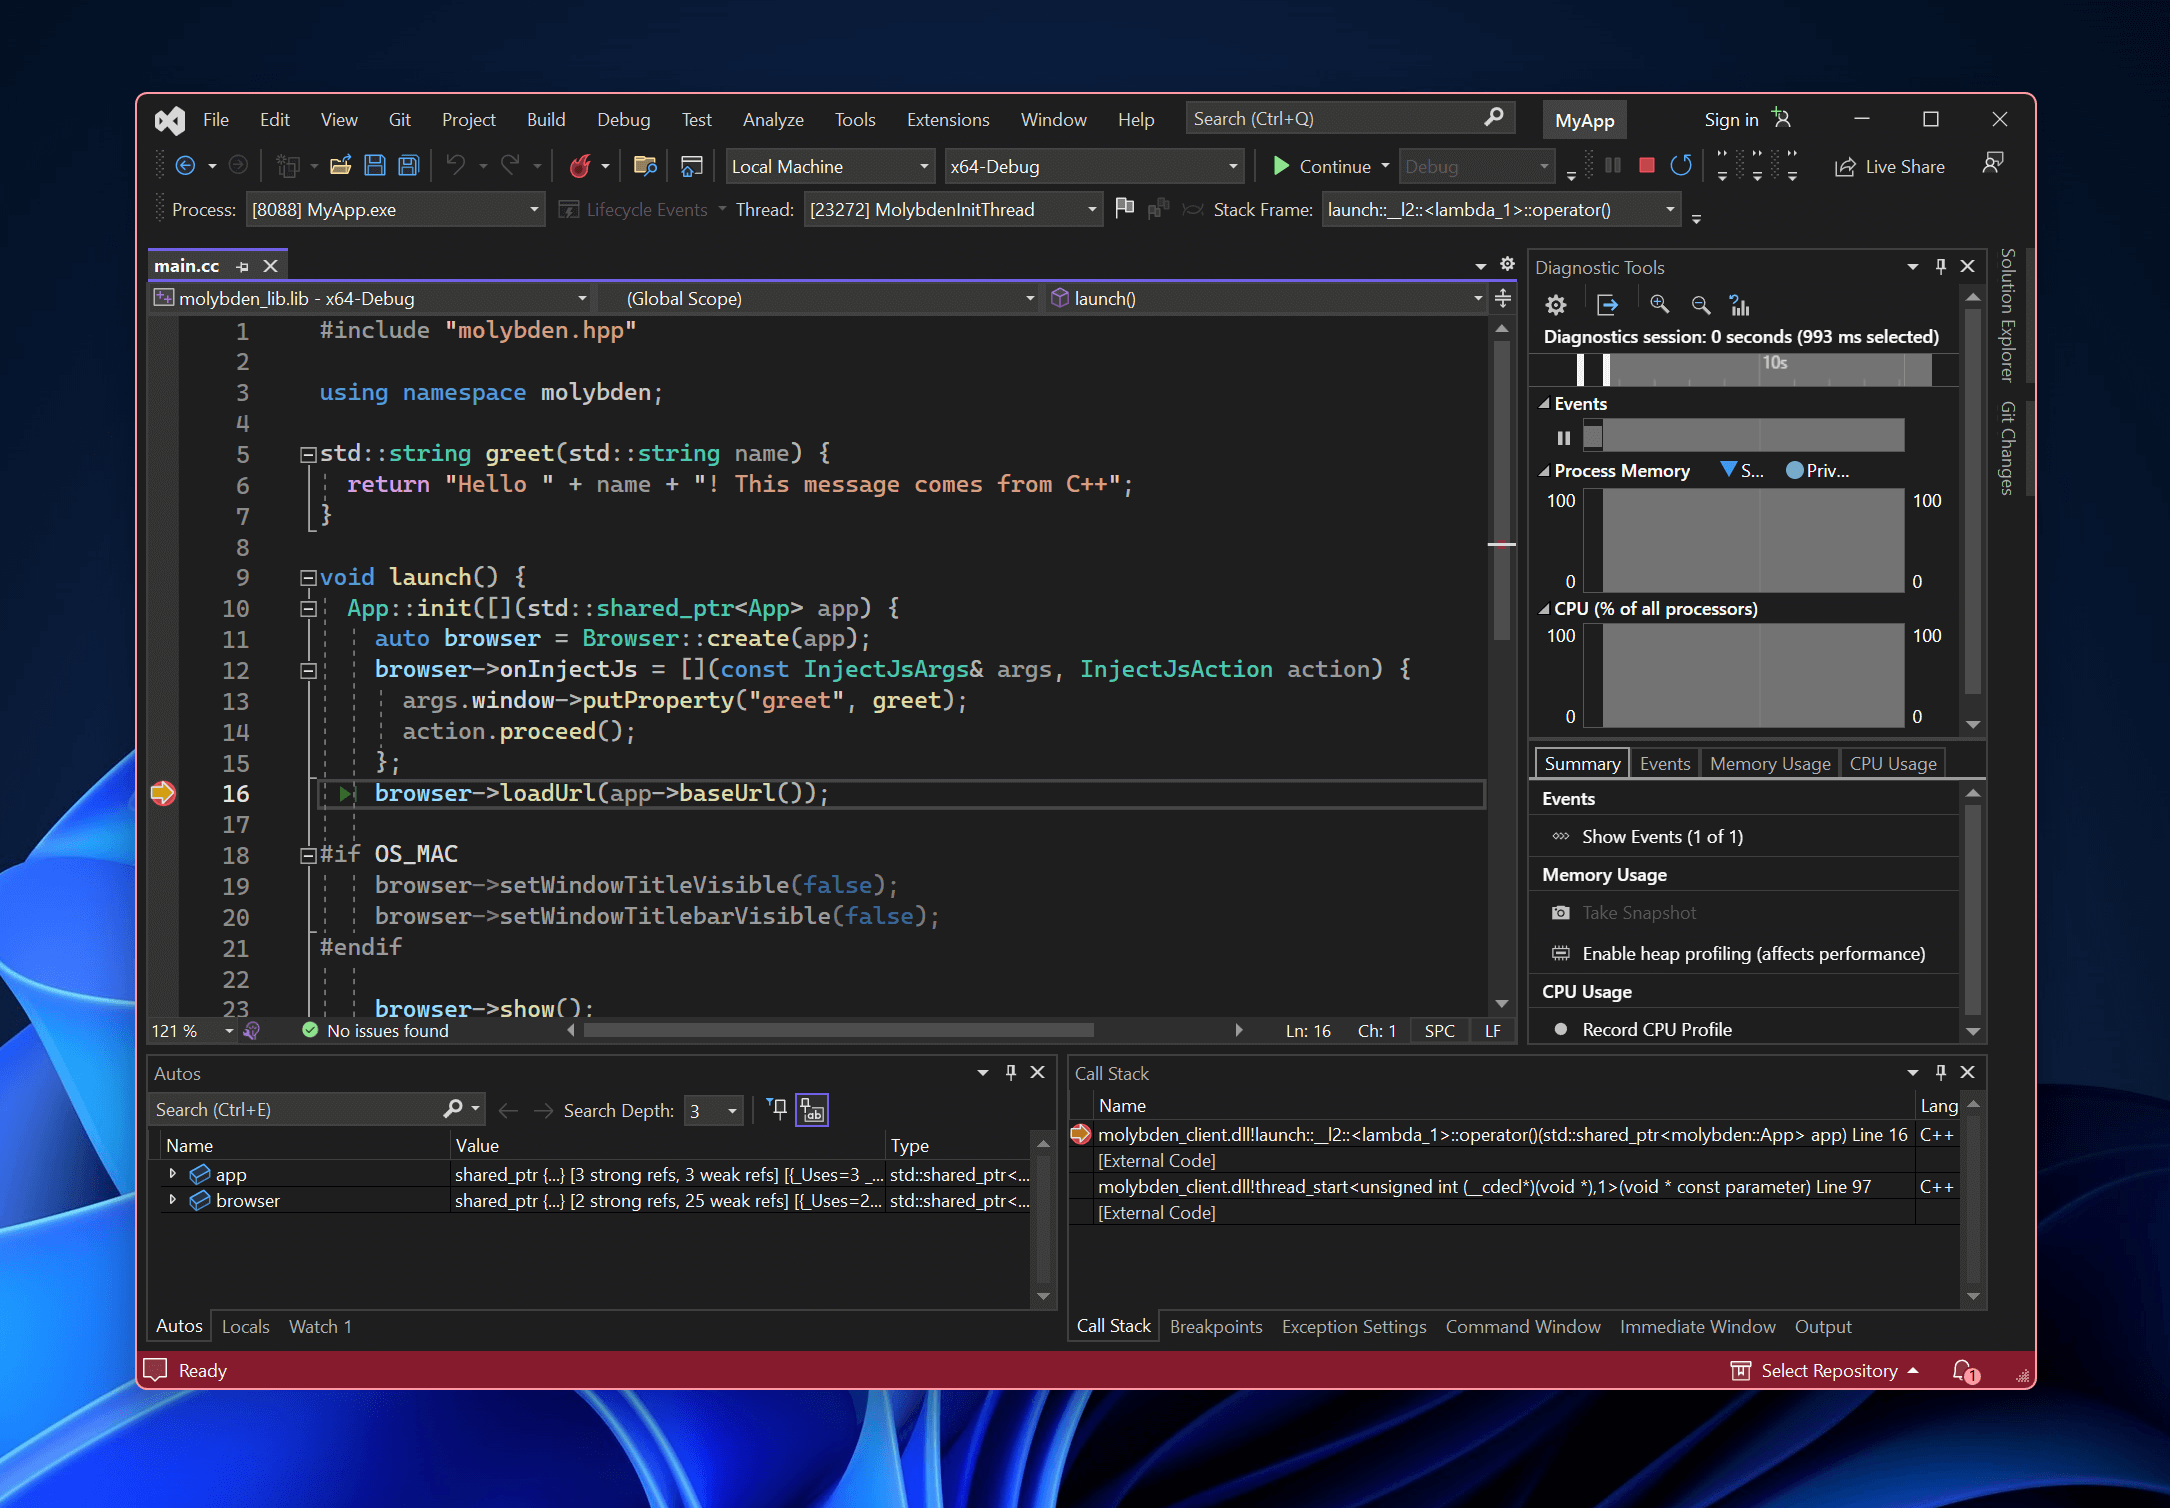 Visual Studio debug session